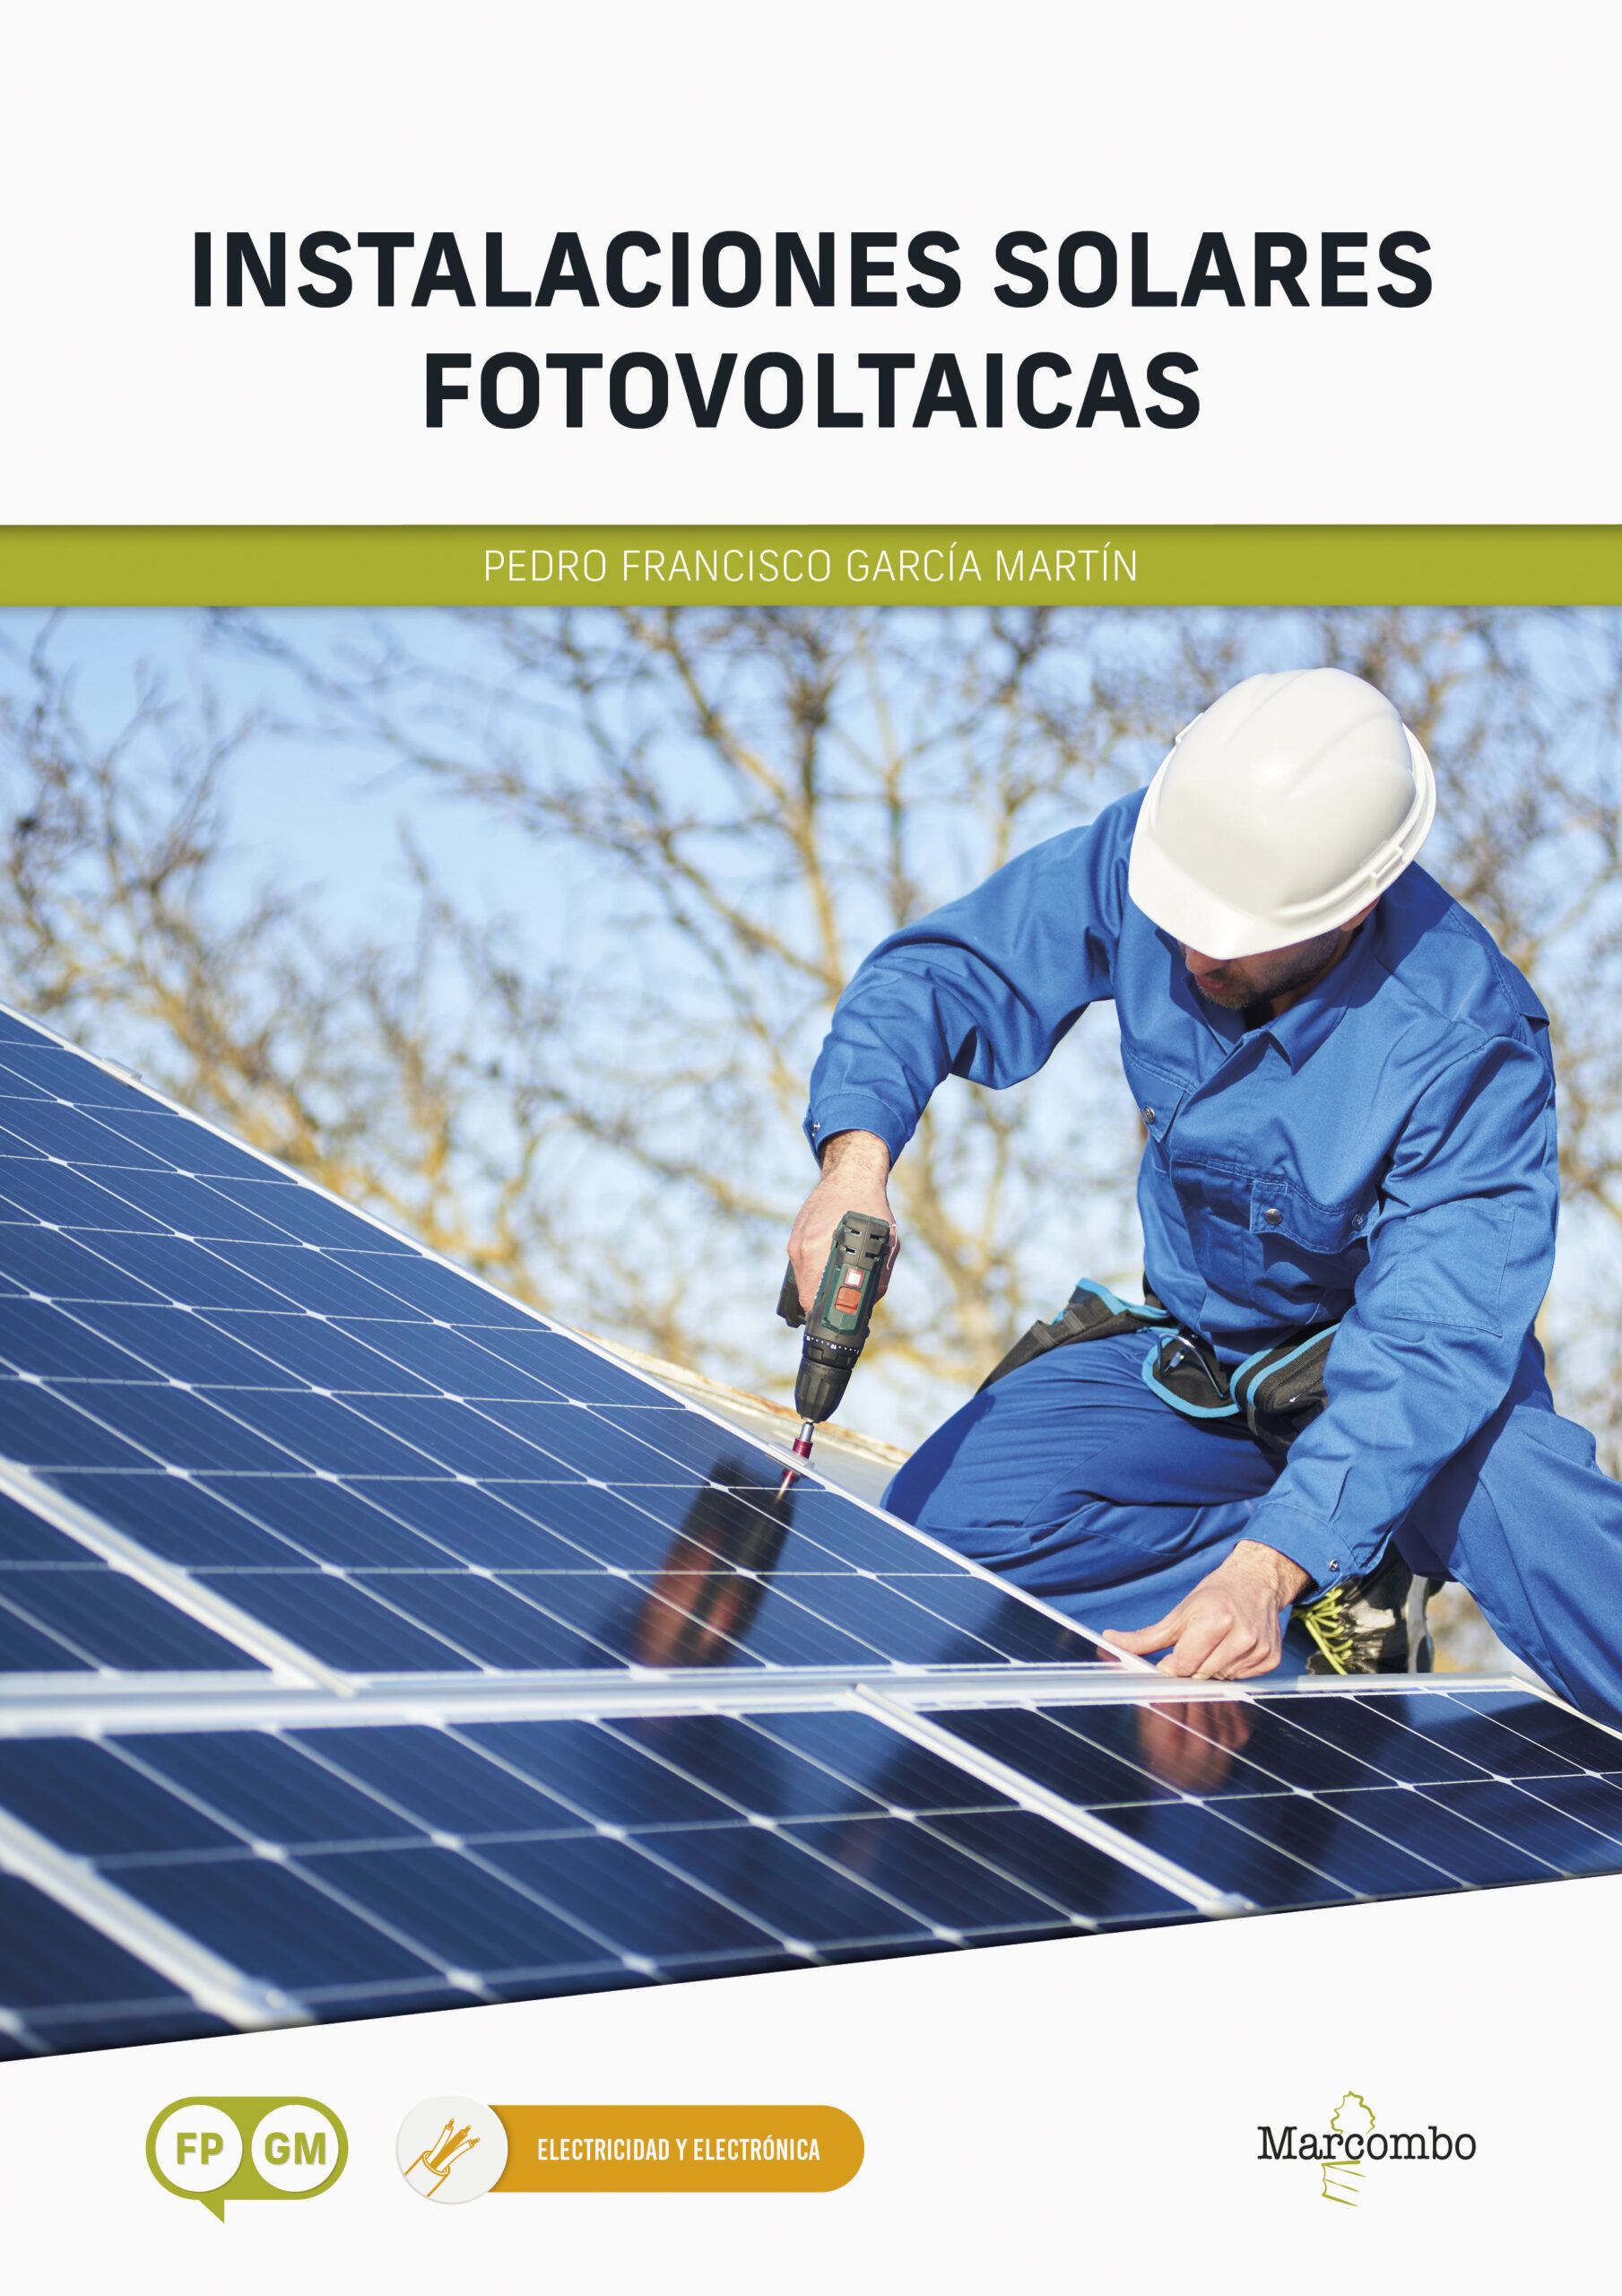 *Instalaciones solares fotovoltaicas